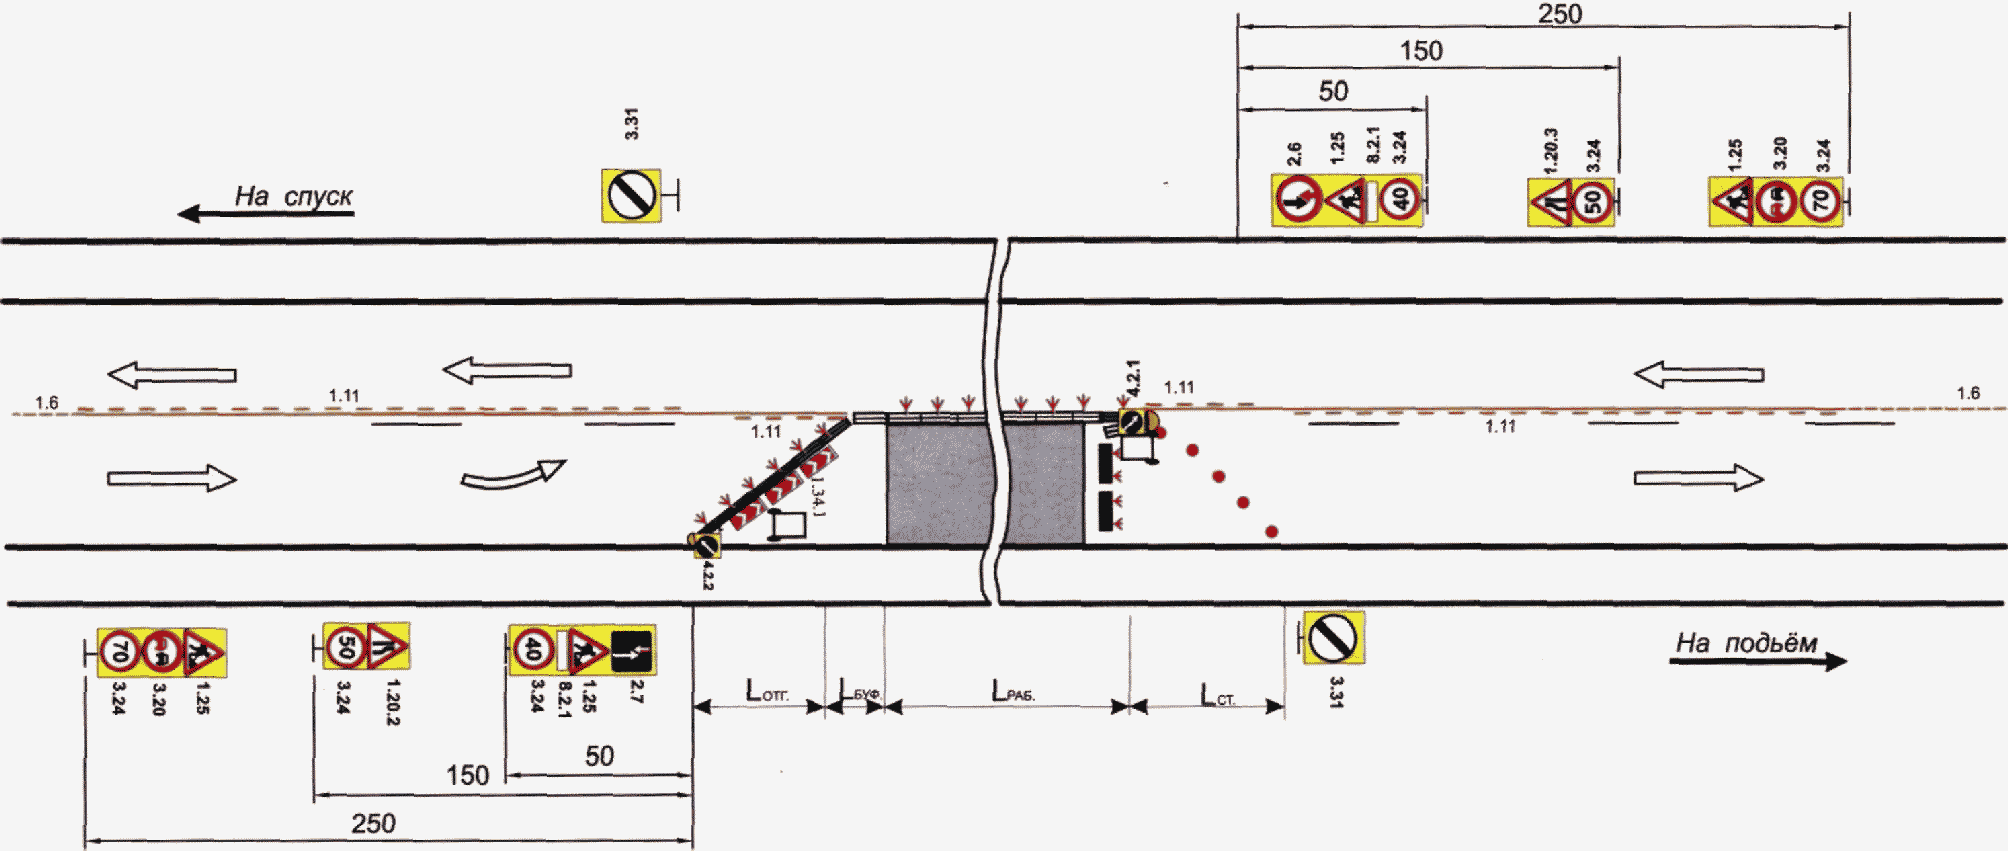 Схема двухполосной дороги